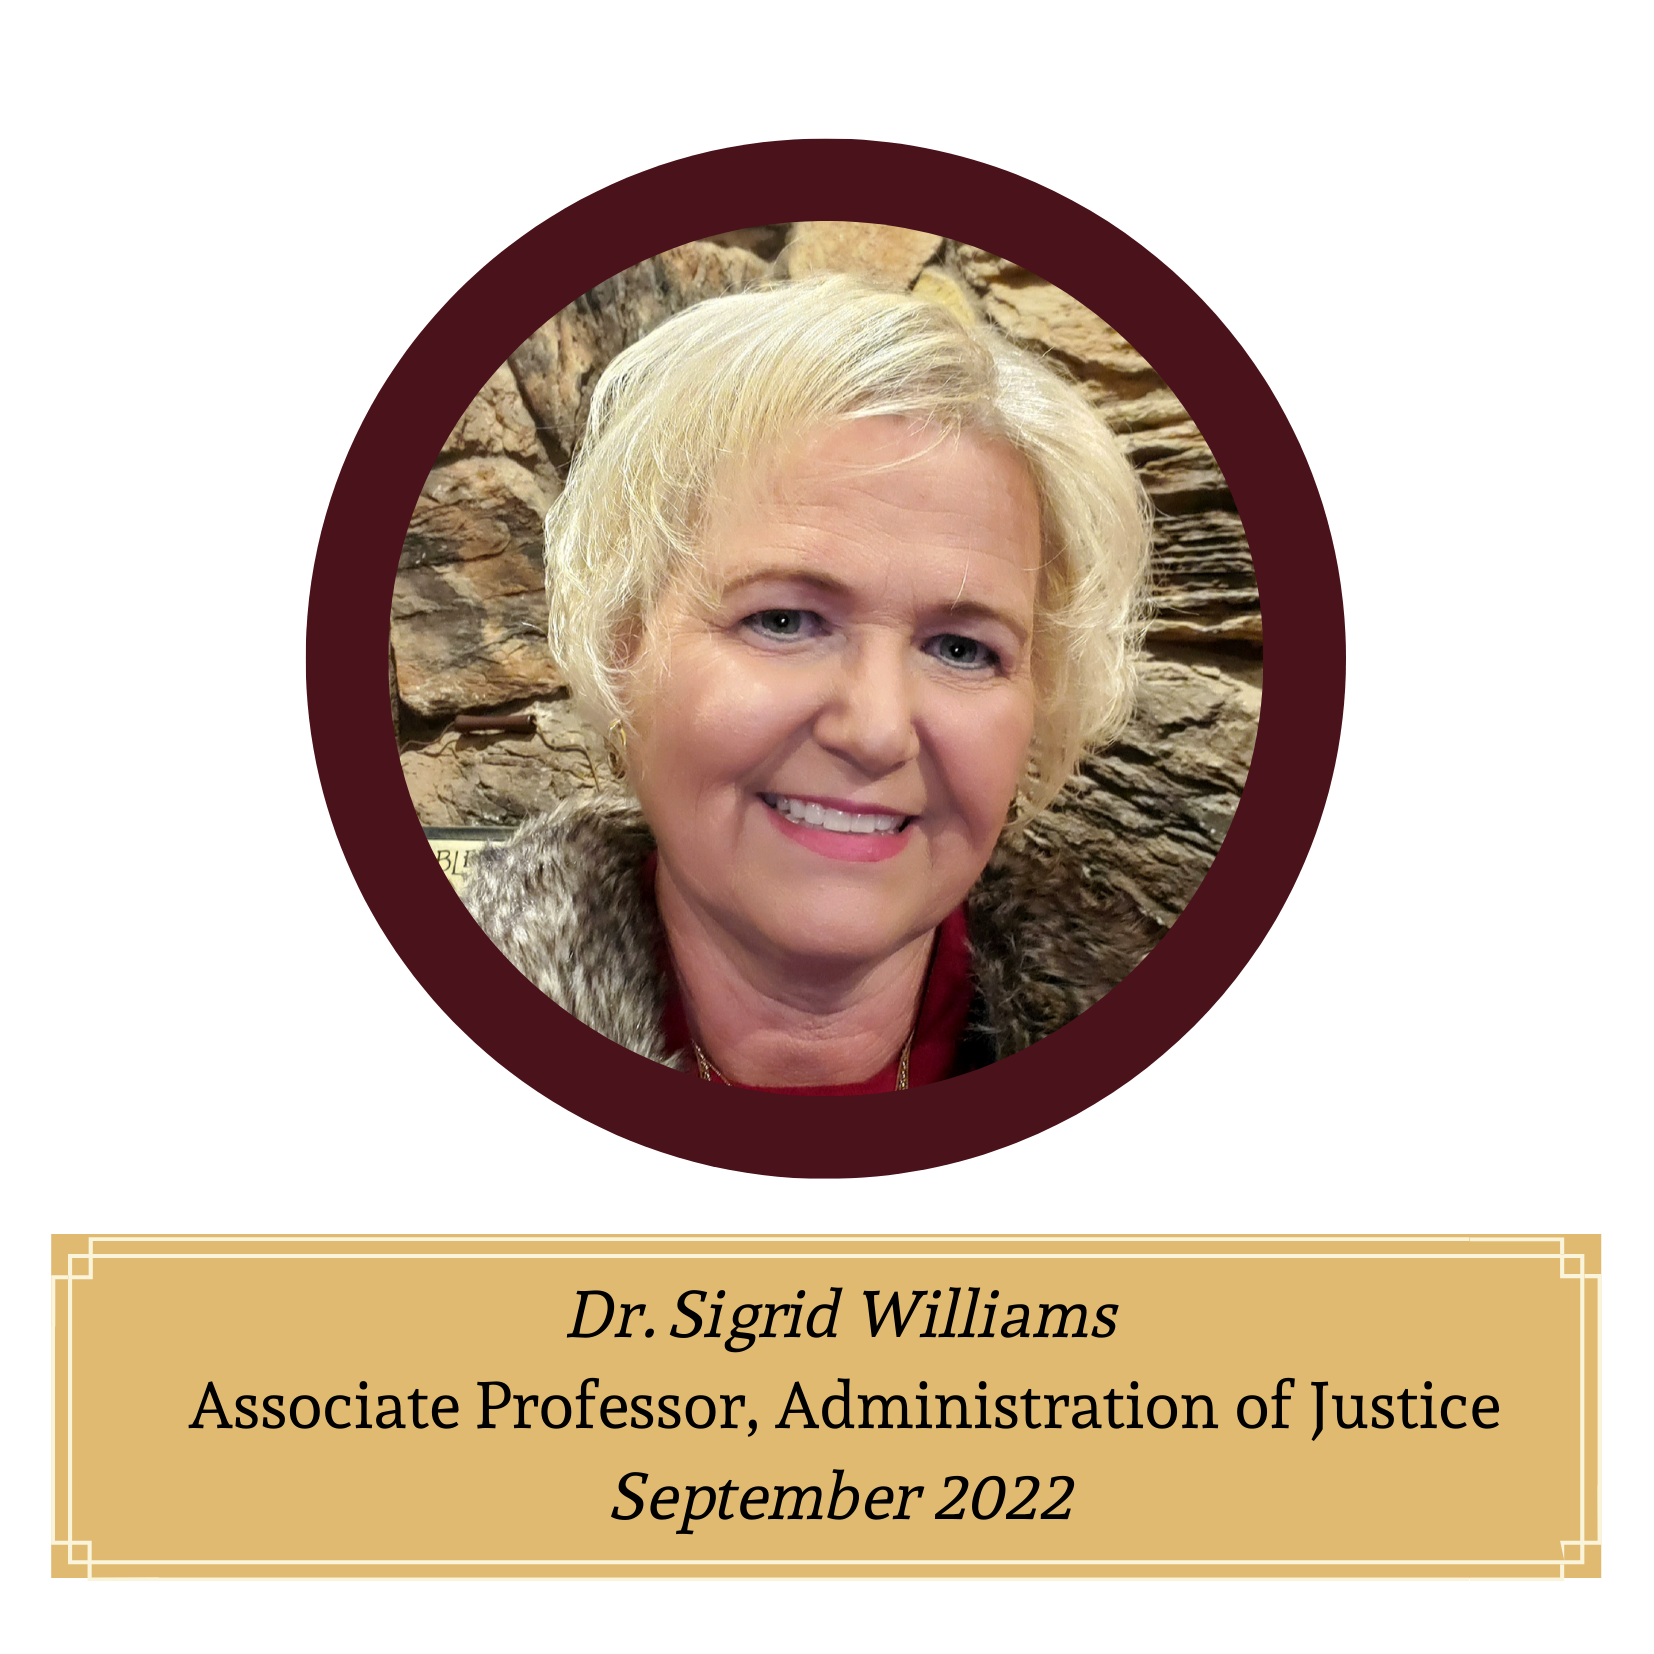 Dr. Sigrid Williams